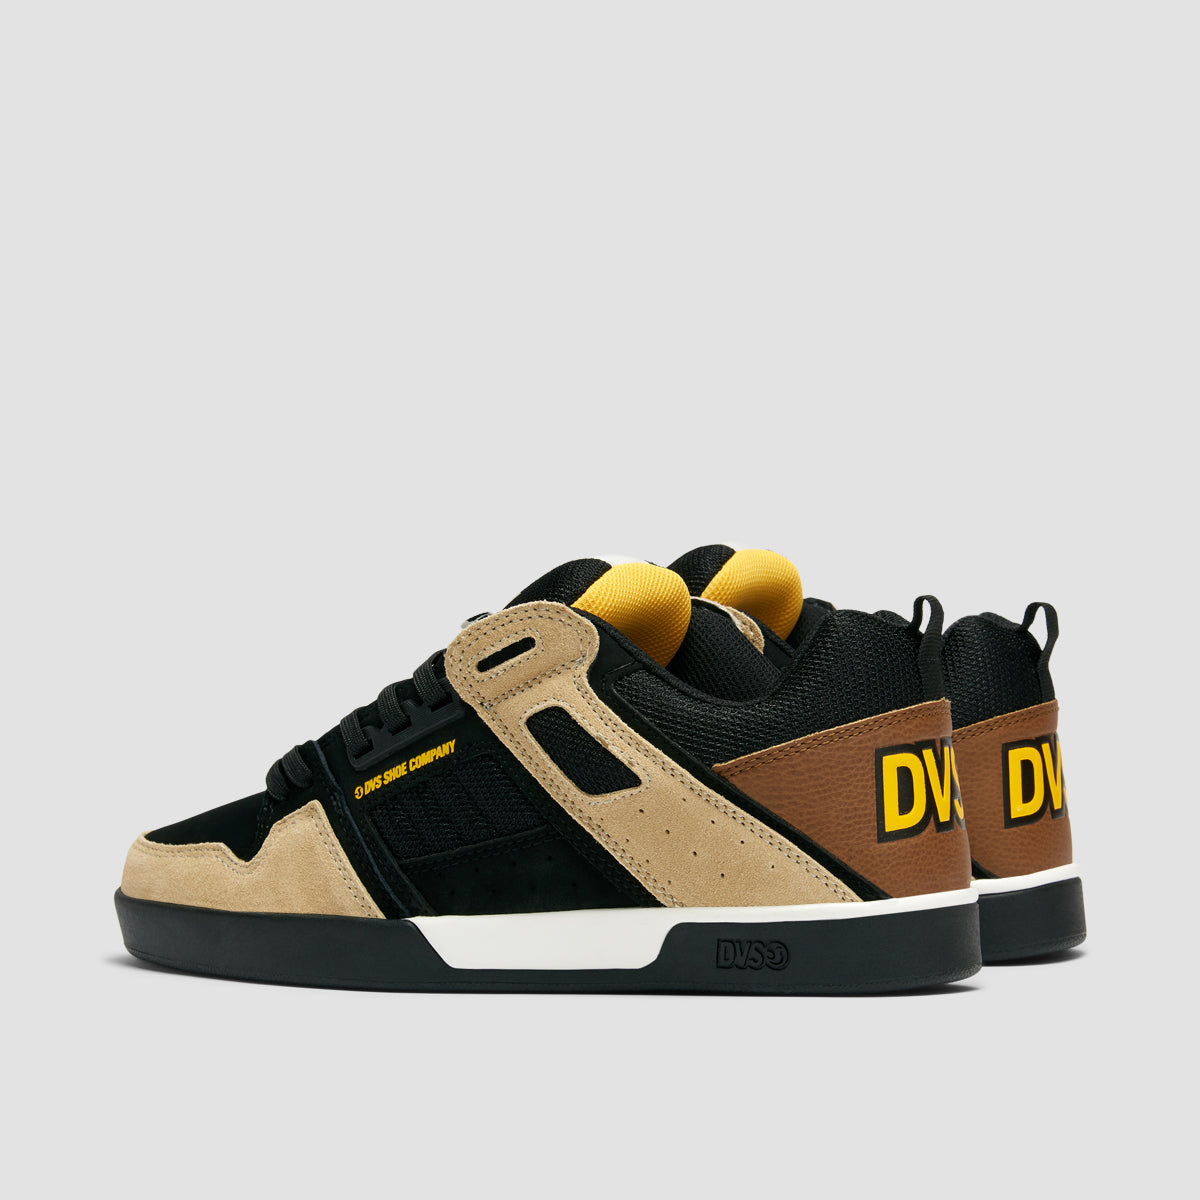 DVS Comanche 2.0+ Shoes - Black/Tan/Yellow Suede